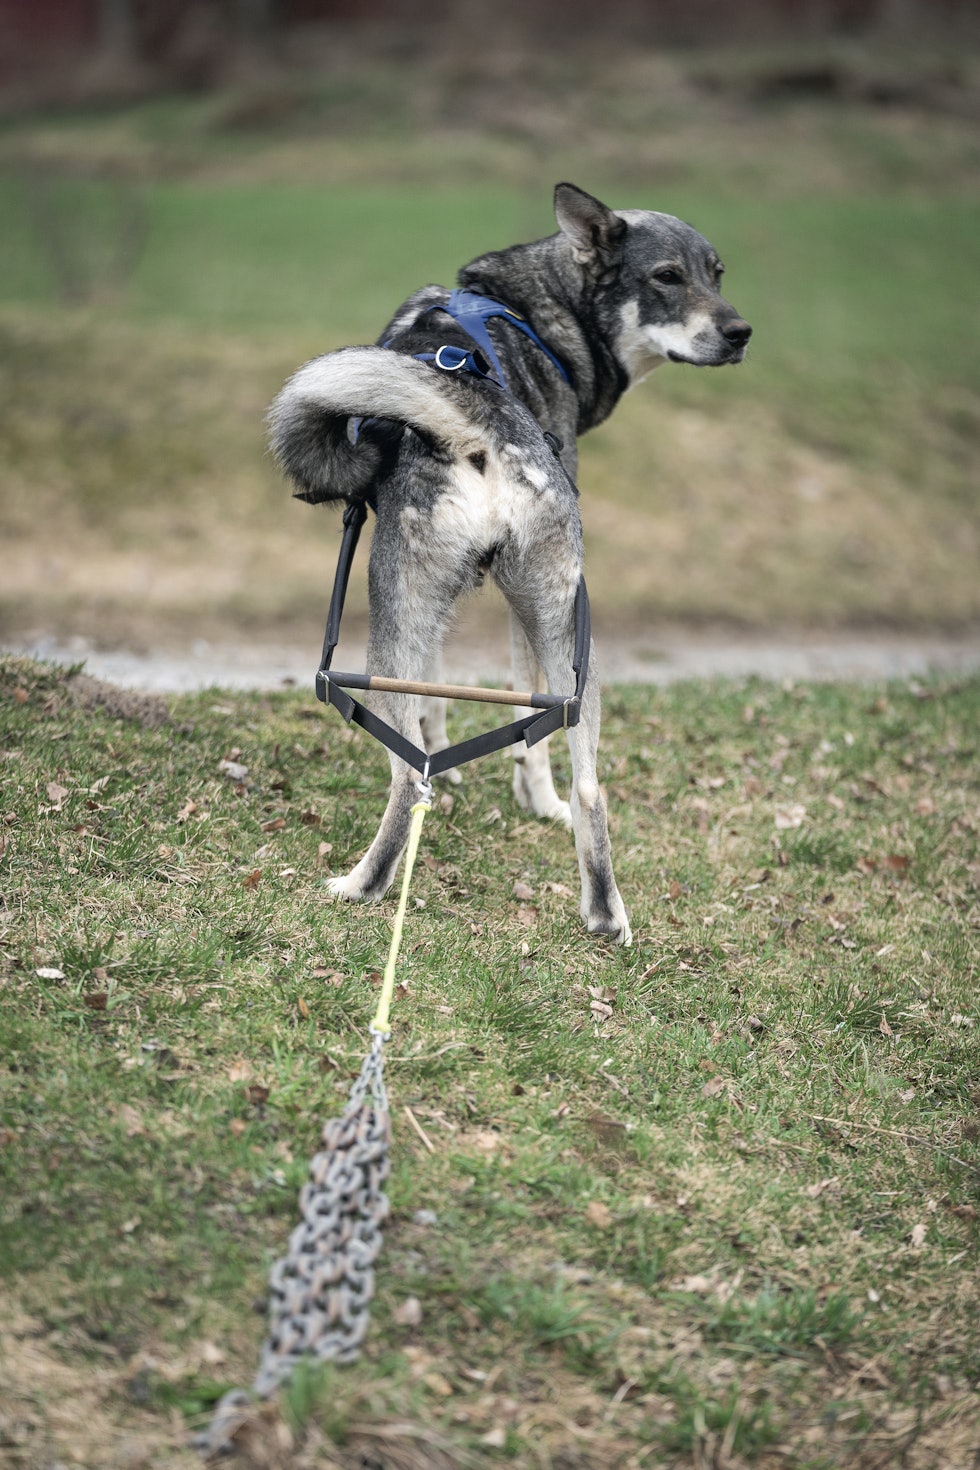 Kjetting: Kjettingtrekk styrker både rygg og bakpart, samtidig som det gir god mulighet til å trene kontakt og lydighet med hunden.